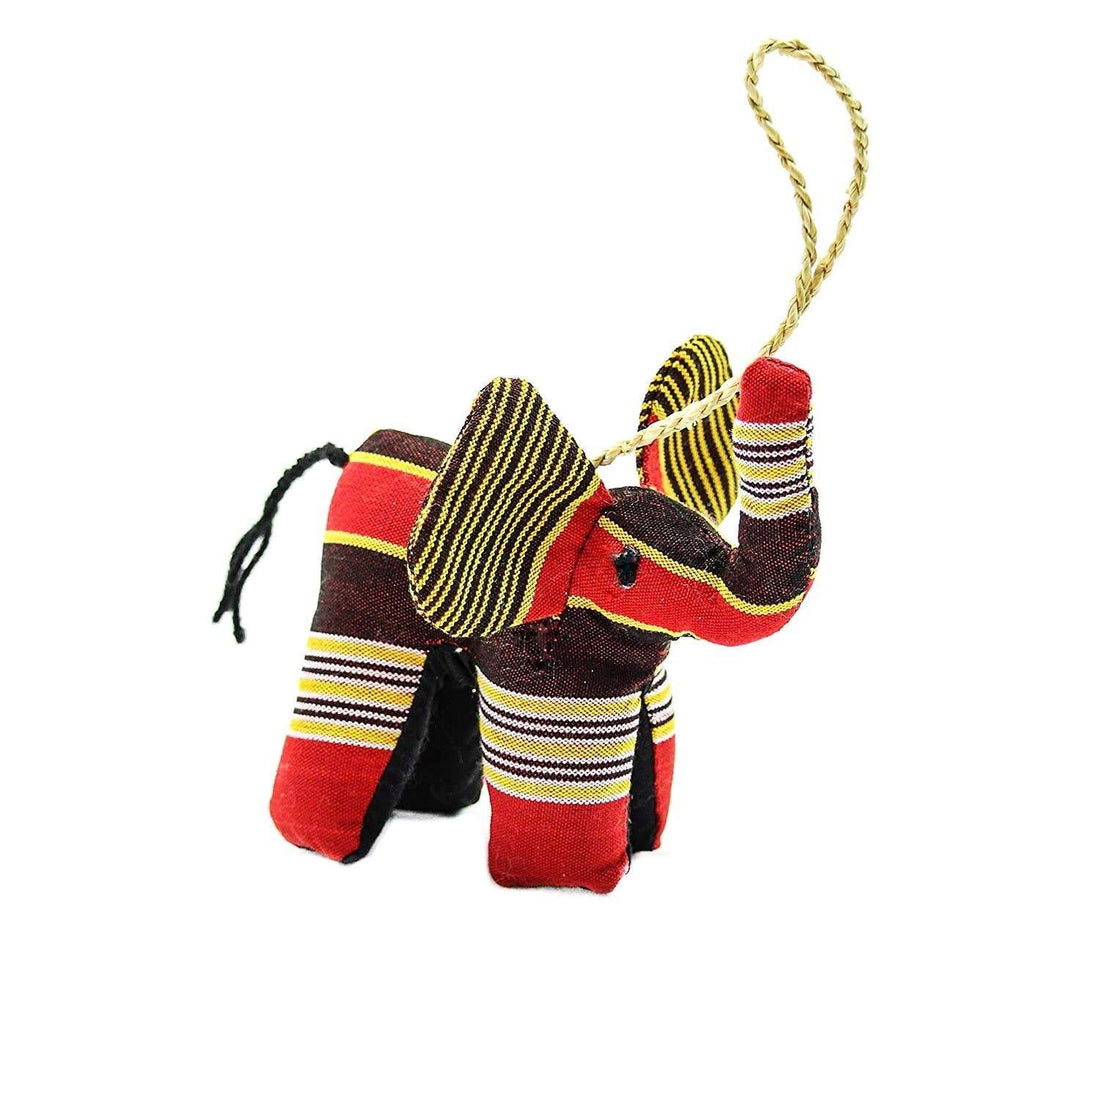 Kikoy Elephant Ornament